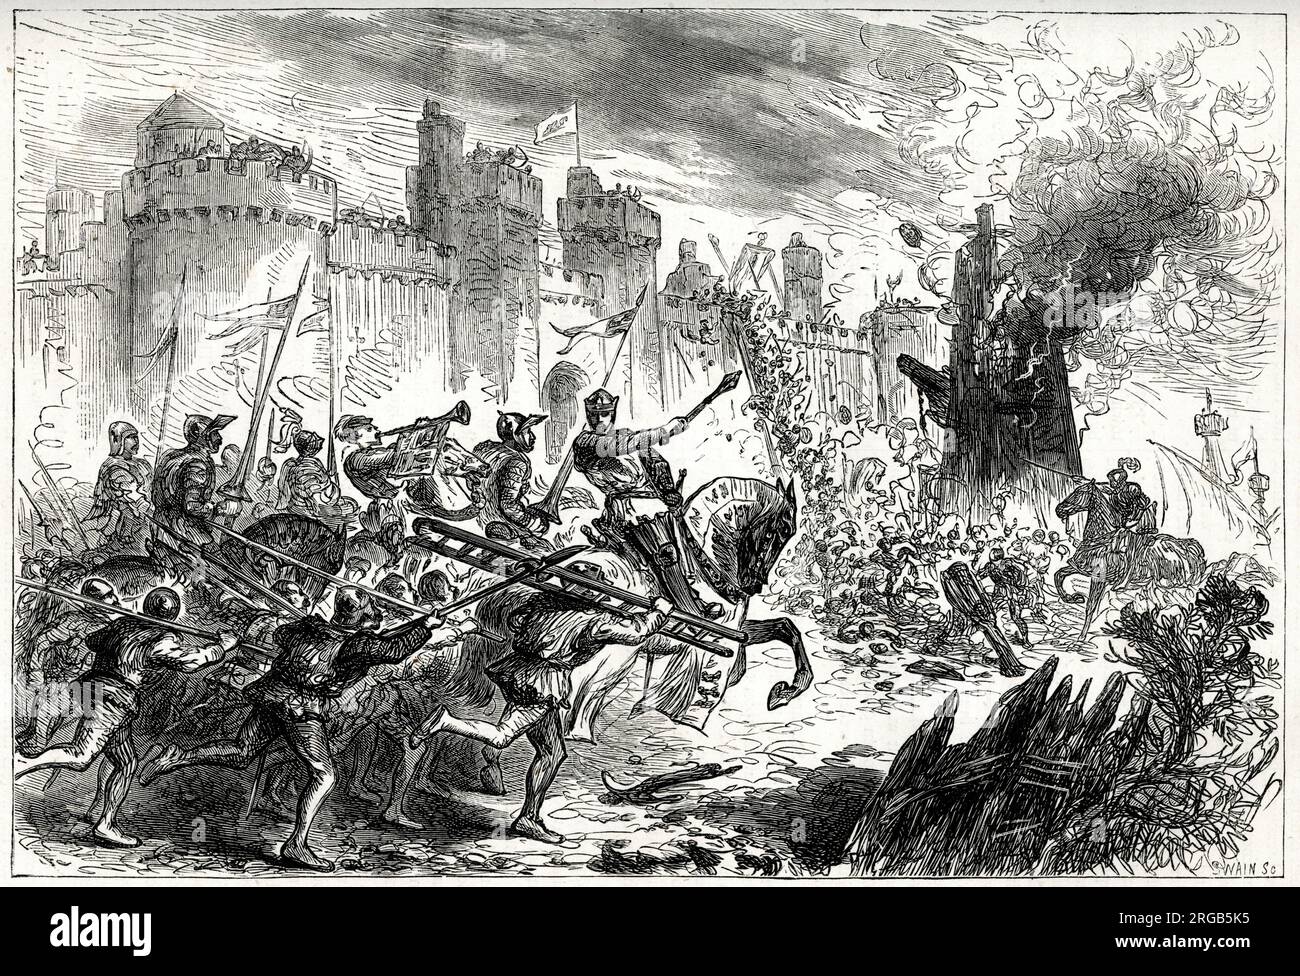 Le roi Edward I en action pendant le siège de Berwick, pendant la première Guerre de l'indépendance écossaise. Banque D'Images